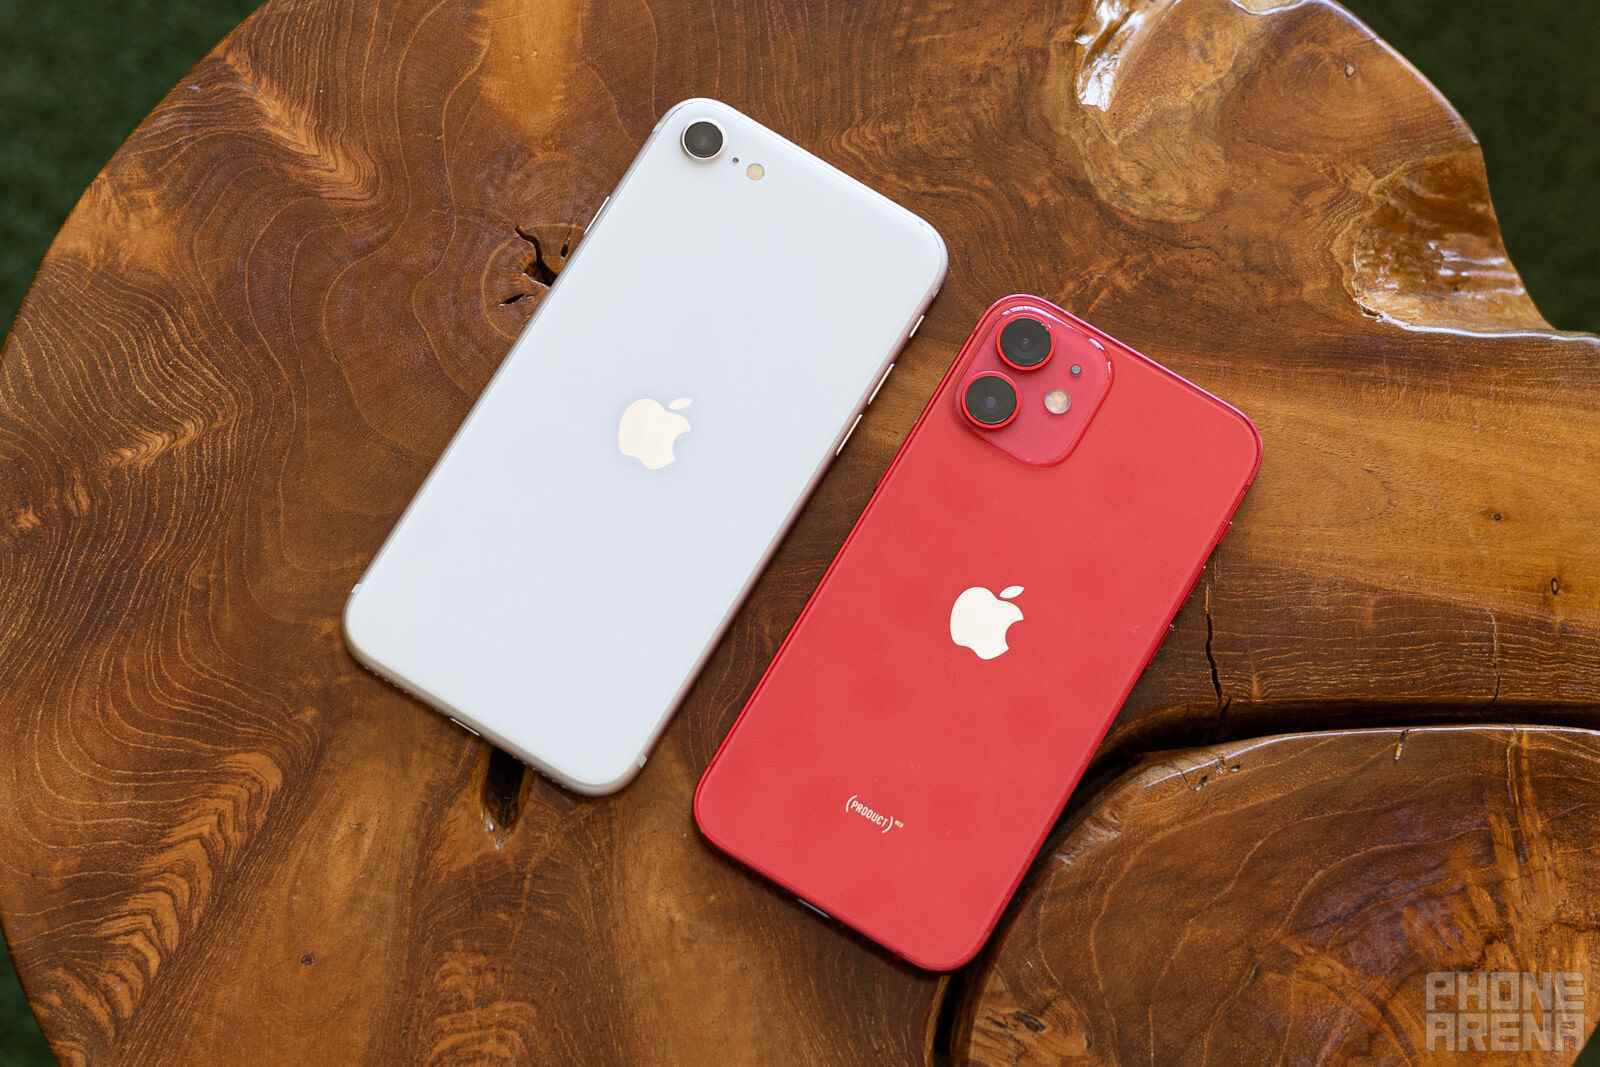 Sol - iPhone SE;  Sağ - iPhone 12 mini - Tahmin: iPhone mini ölmedi küllerinden yeniden doğacak